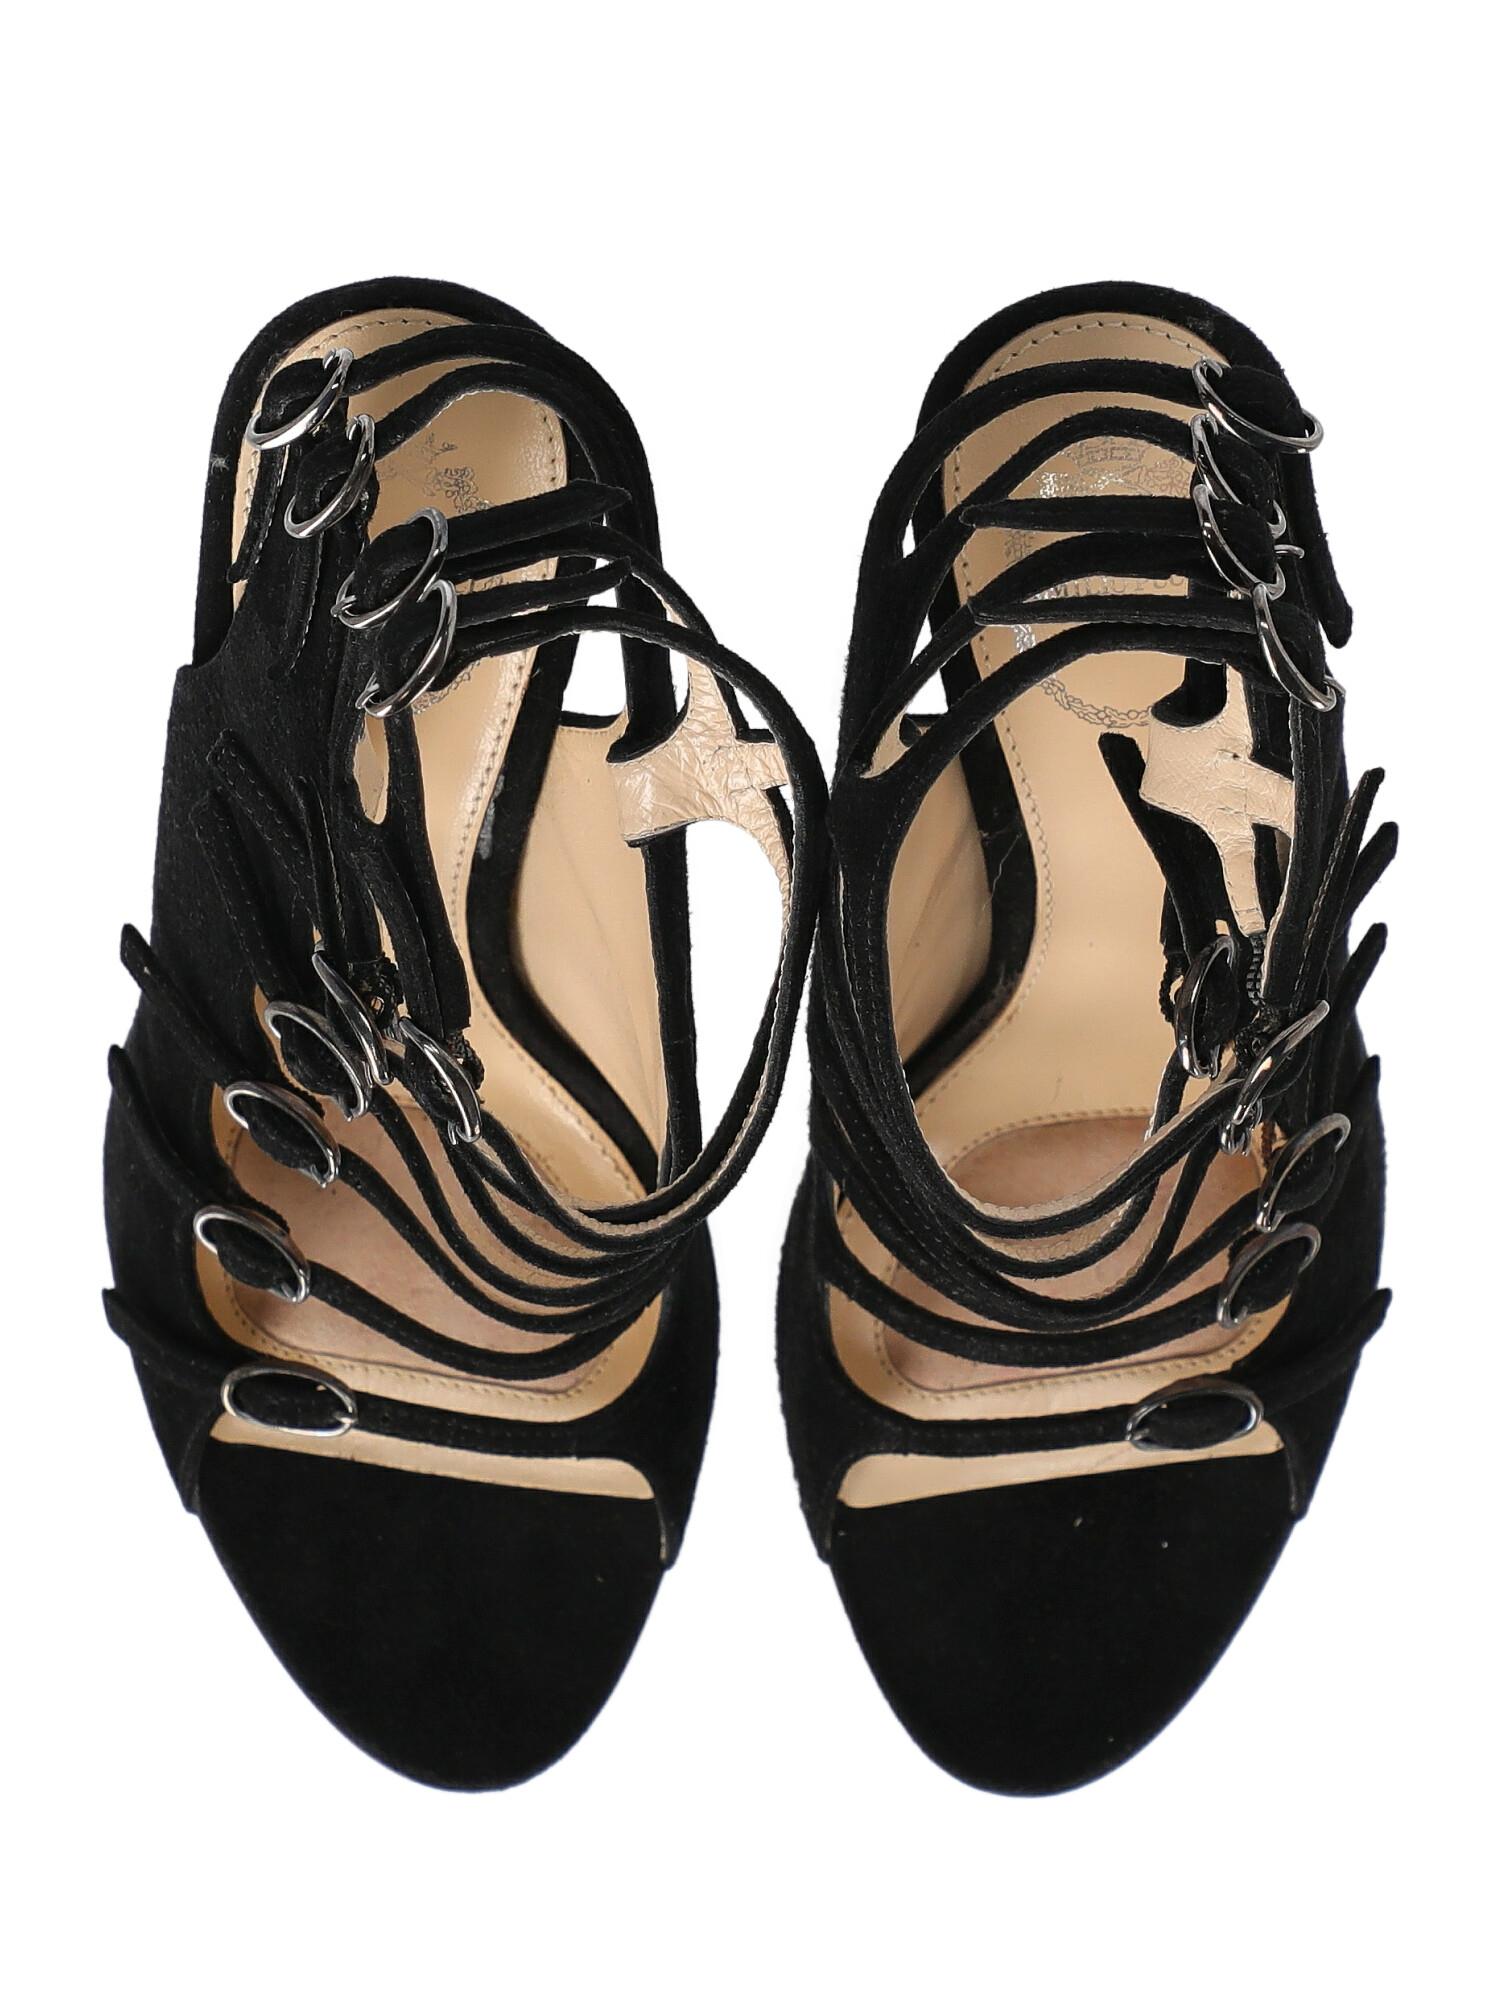 Emilio Pucci Woman Sandals Black Leather IT 36 For Sale 2